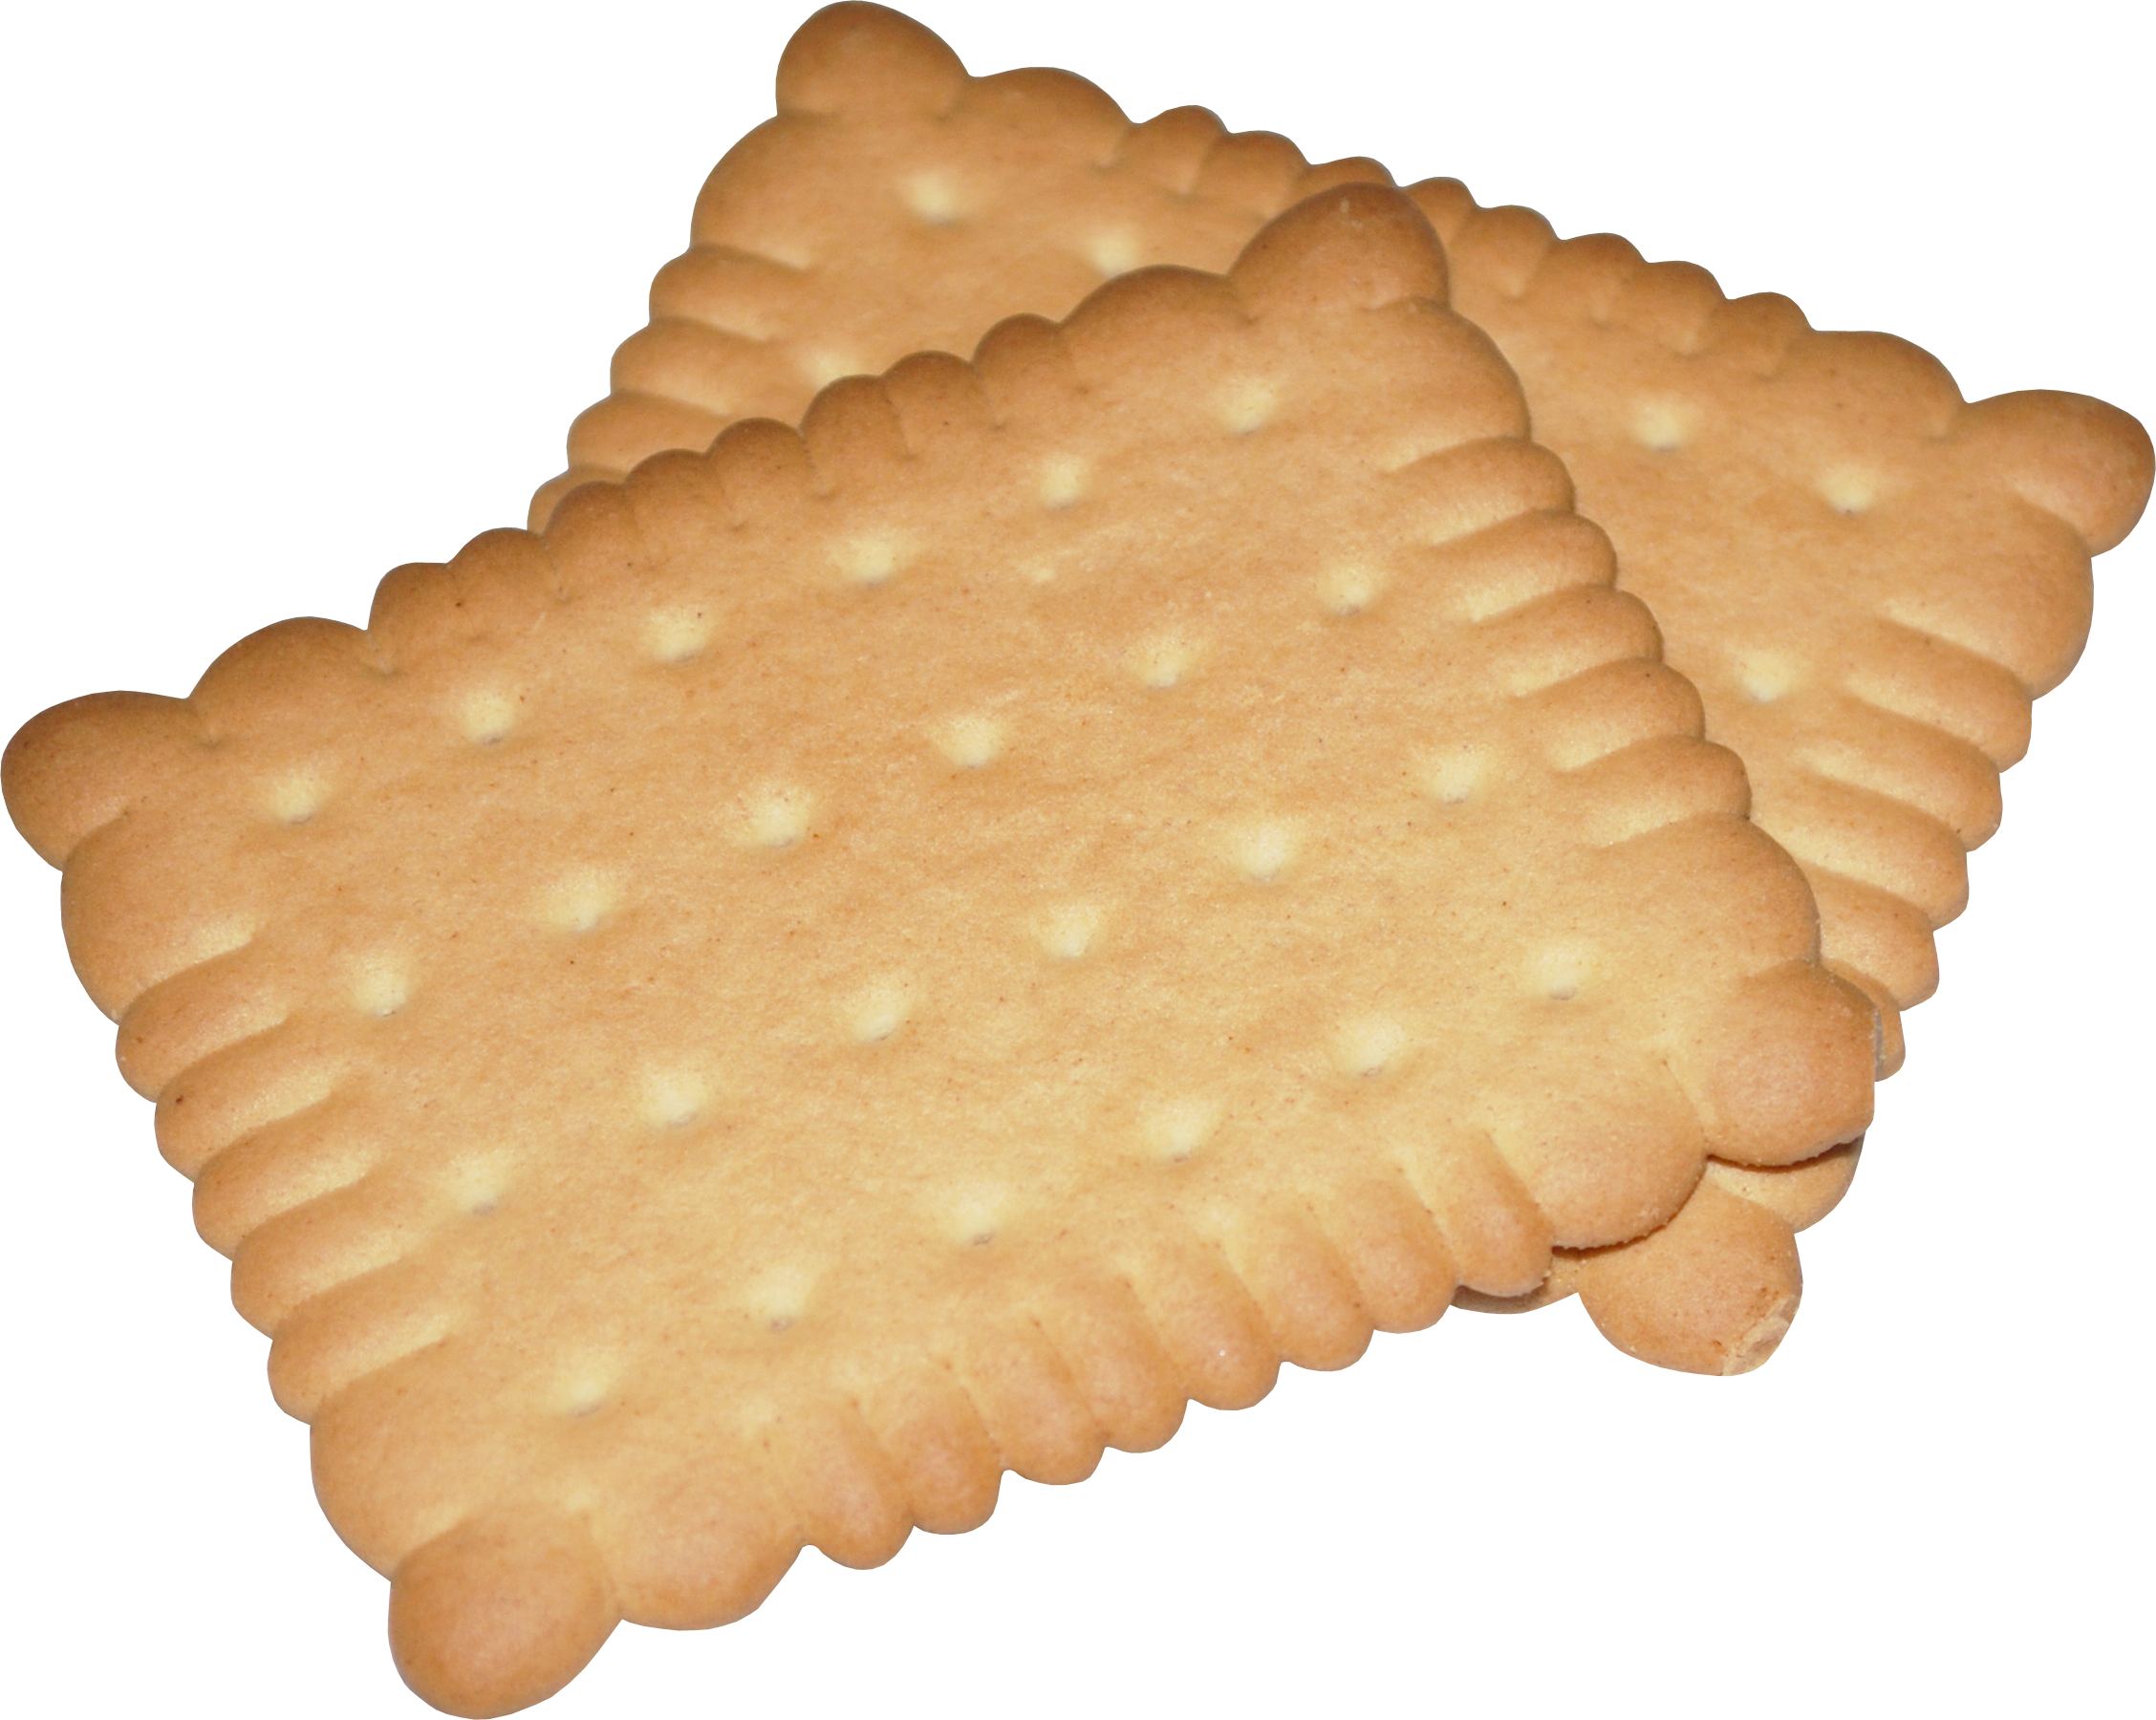 Des biscuits